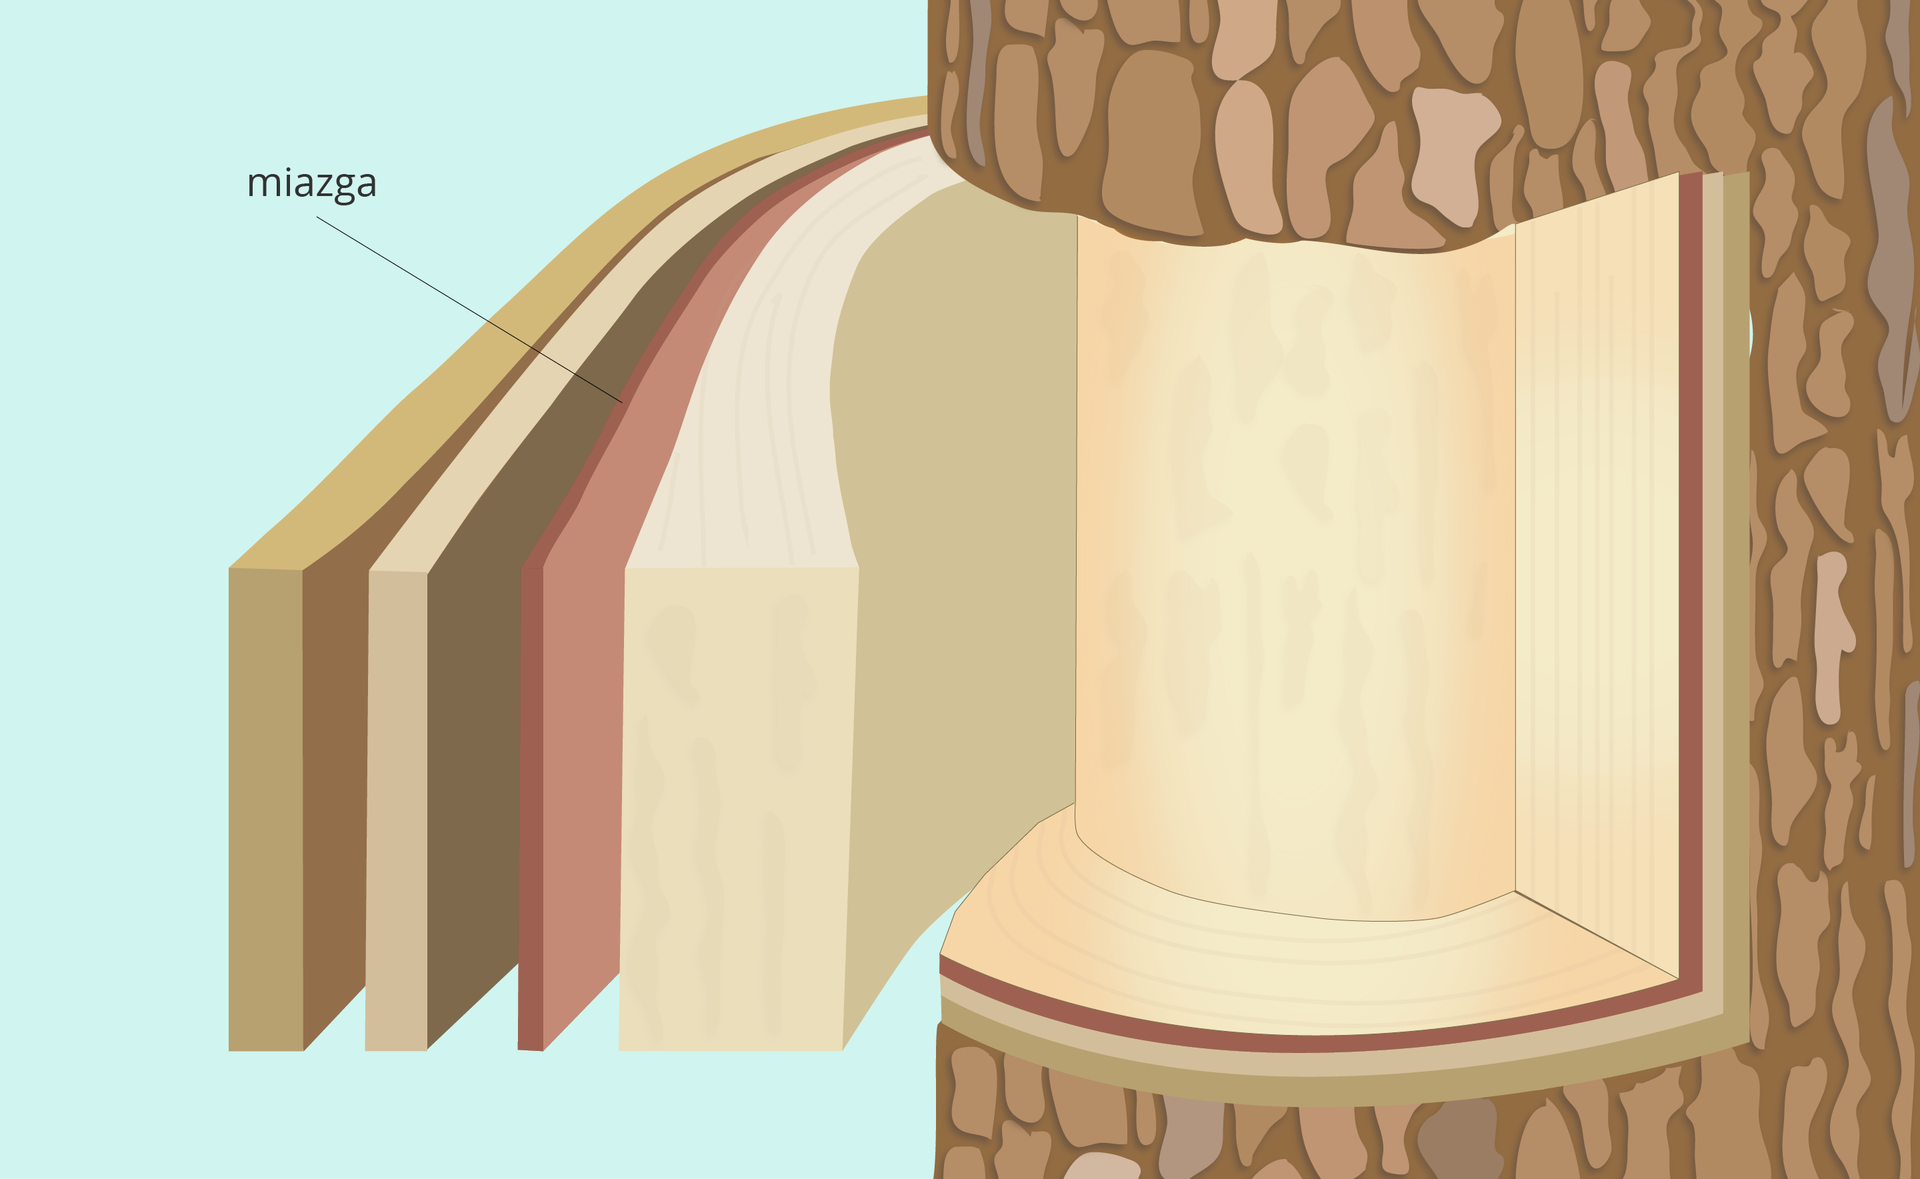 ilustracja pokazuje fragment pnia i warstwy tkanek położonych pod korą, w tym miazgę.